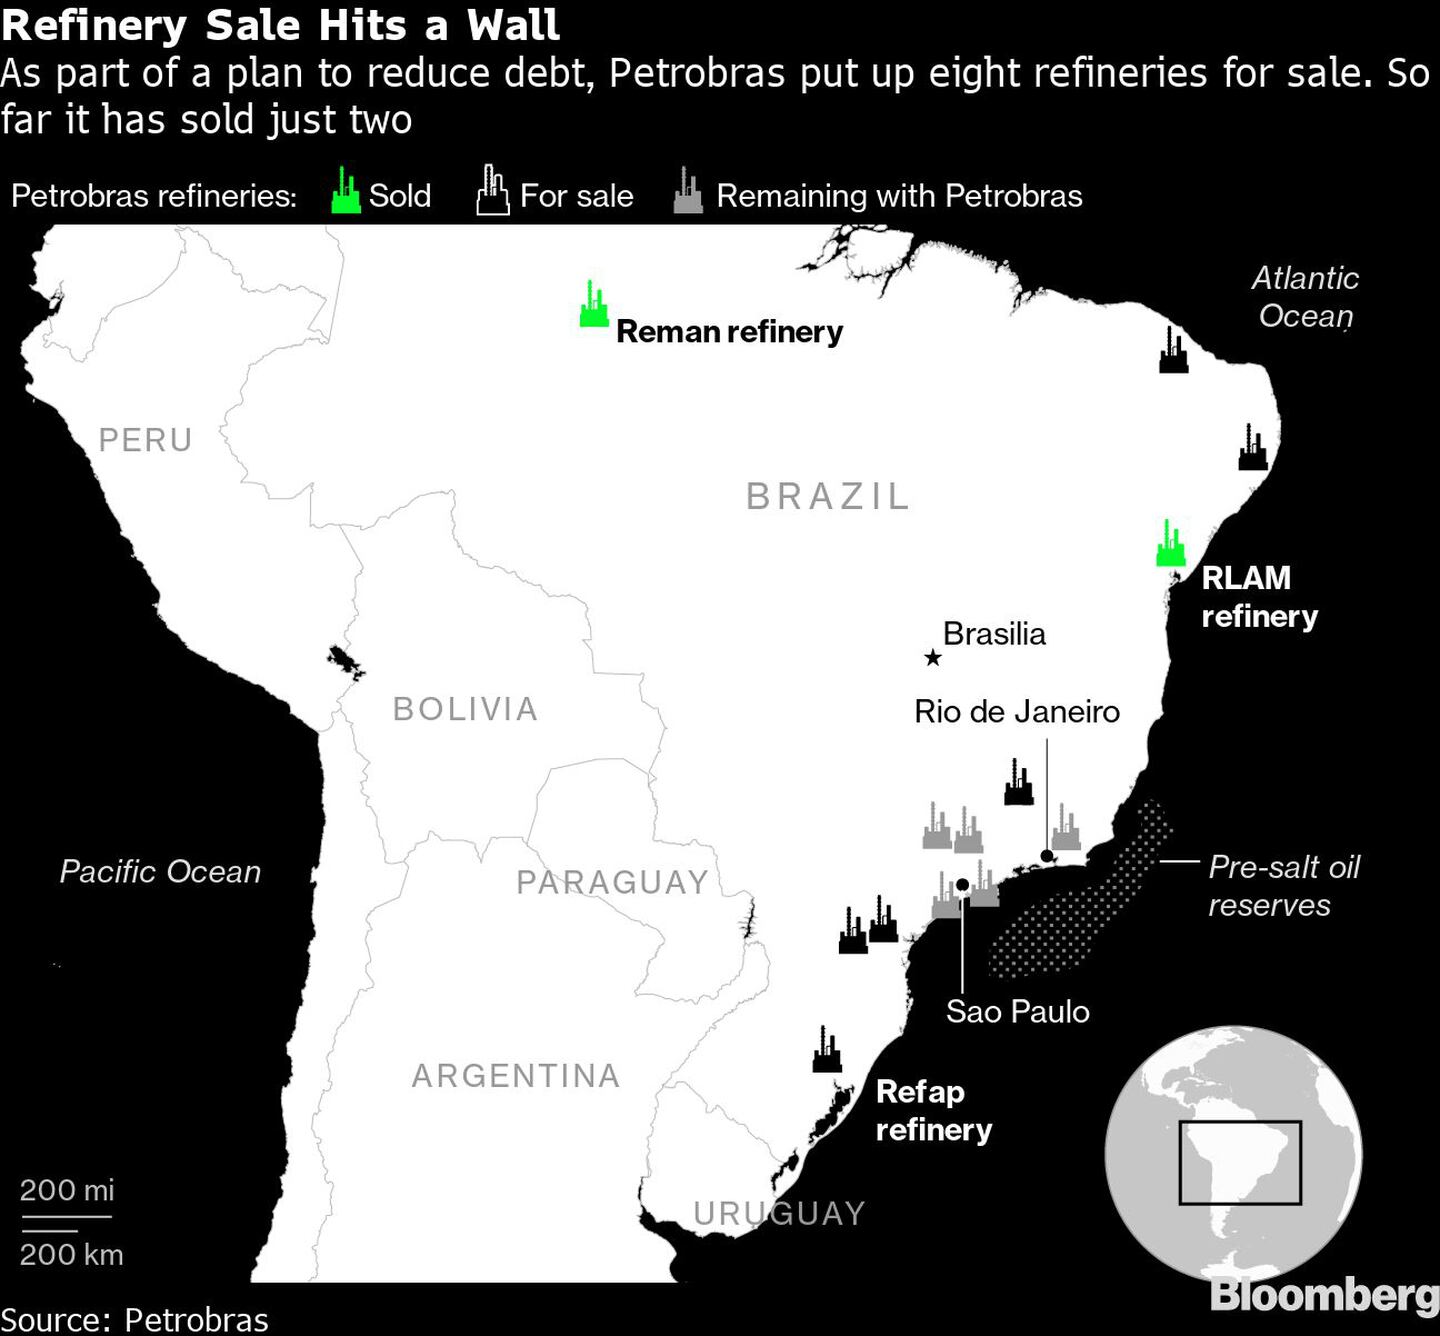 La venta de la refinería se topa con un muro
Como parte de un plan para reducir la deuda, Petrobras puso en venta ocho refinerías. Hasta ahora sólo ha vendido dos
Refinerías de Petrobras: Verde: vendida
Negro: En venta
Gris: Permanece en Petrobrasdfd